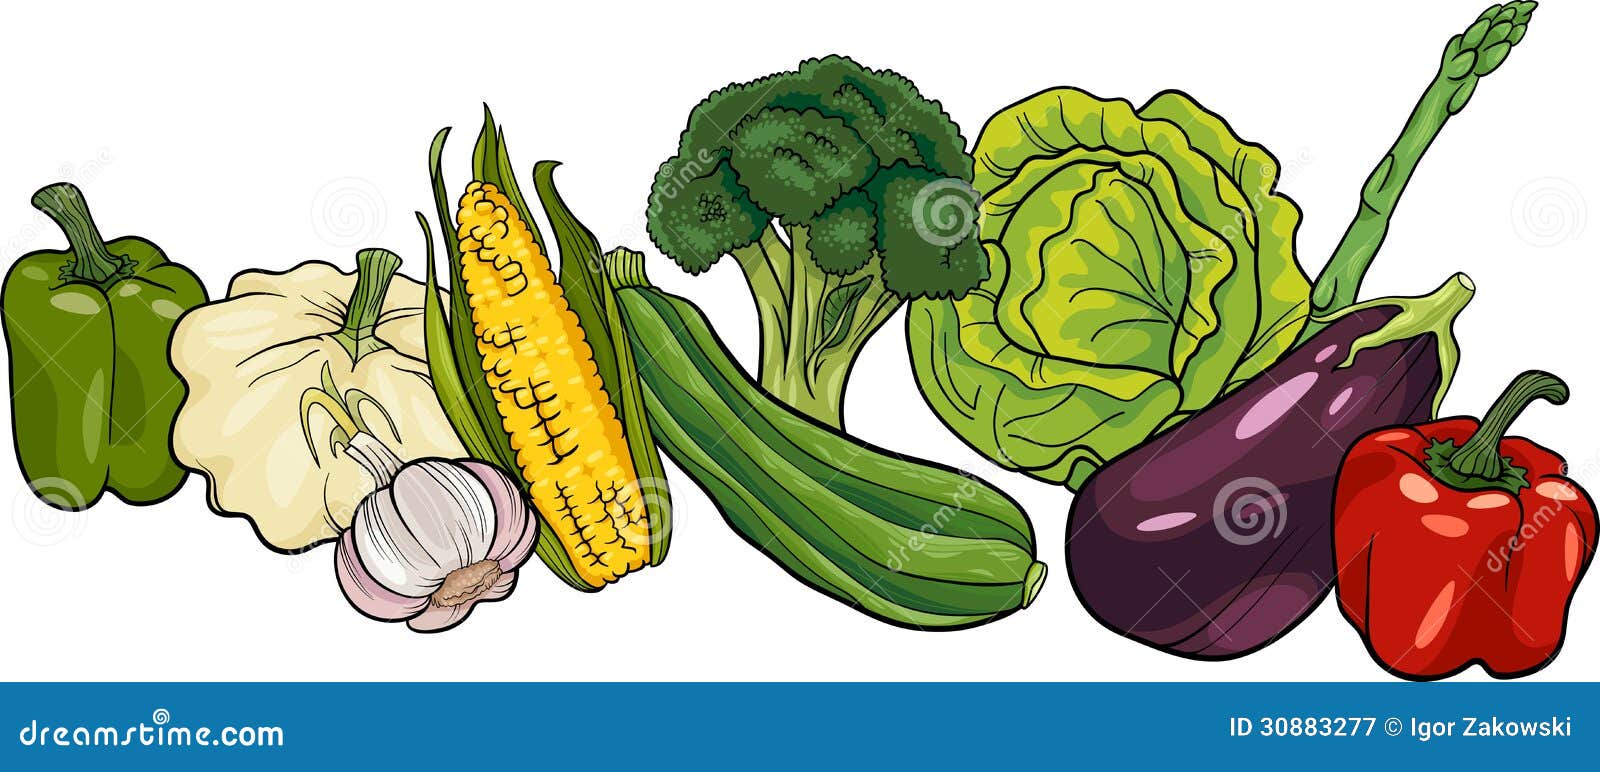 Grande illustration de bande dessinée de groupe de légumes. Illustration de bande dessinée d'objet de nourriture de légumes grand groupe